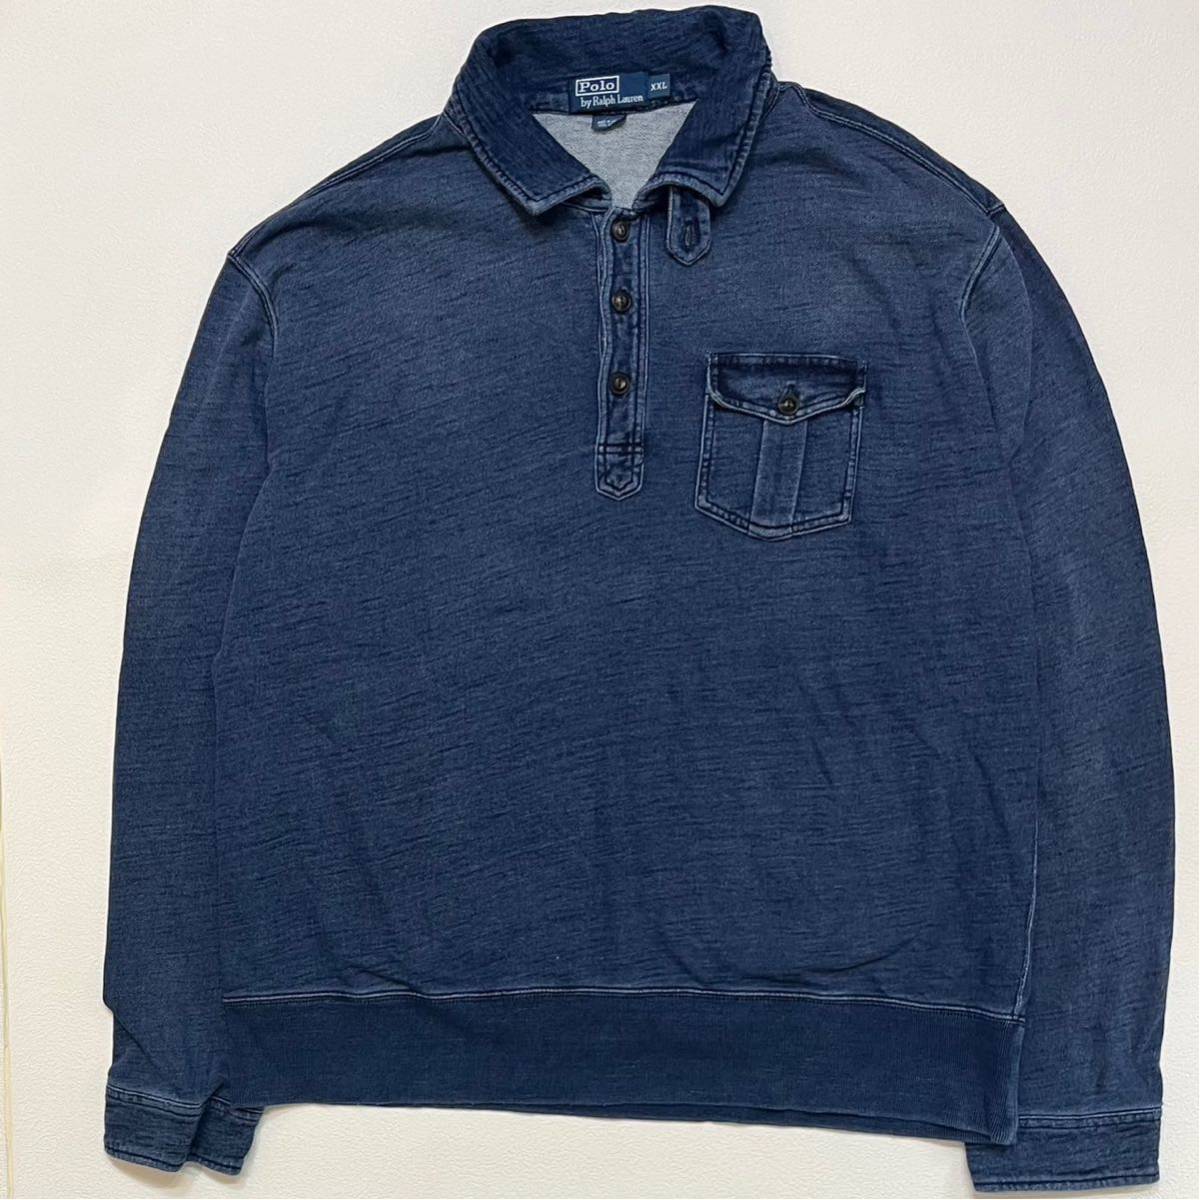 h85 90 年代 POLO RALPH LAUREN チンスト インディゴ プルオーバー シャツ XXL ポロ ラルフローレン indigo shirt vintage ビンテージ